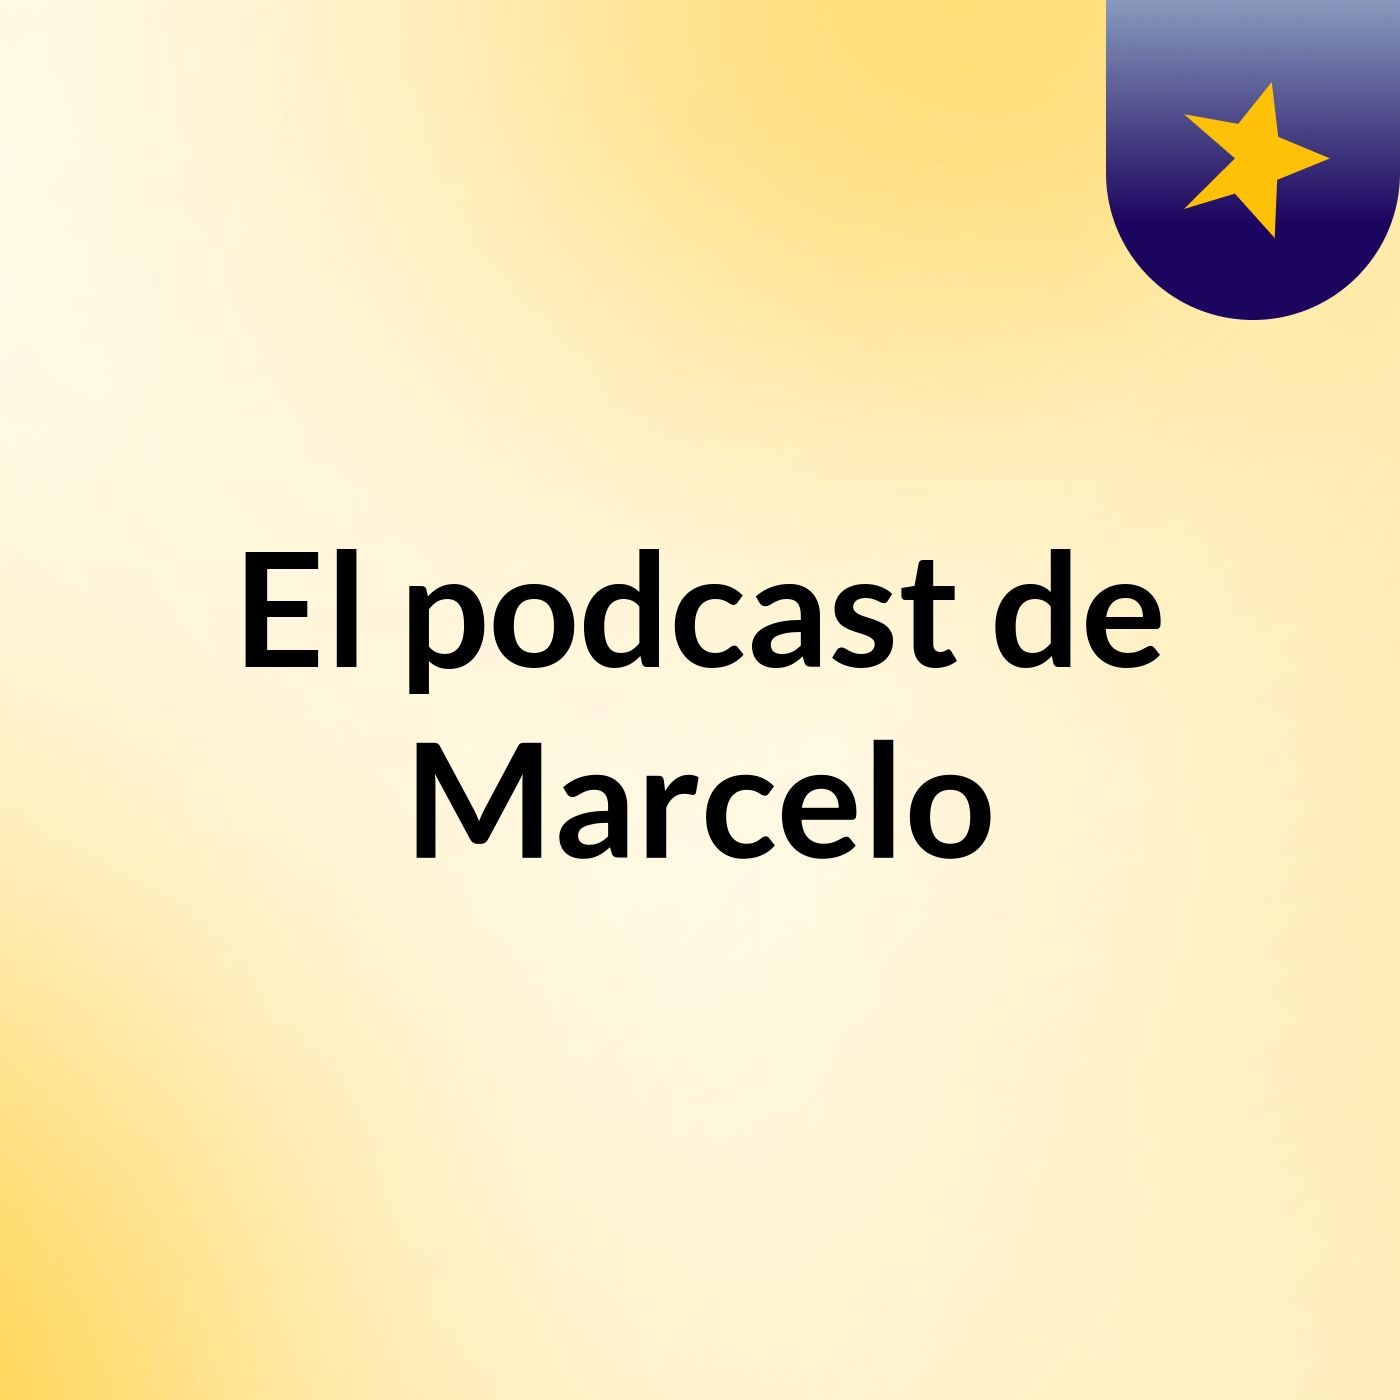 Episodio 3 - El podcast de Marcelo